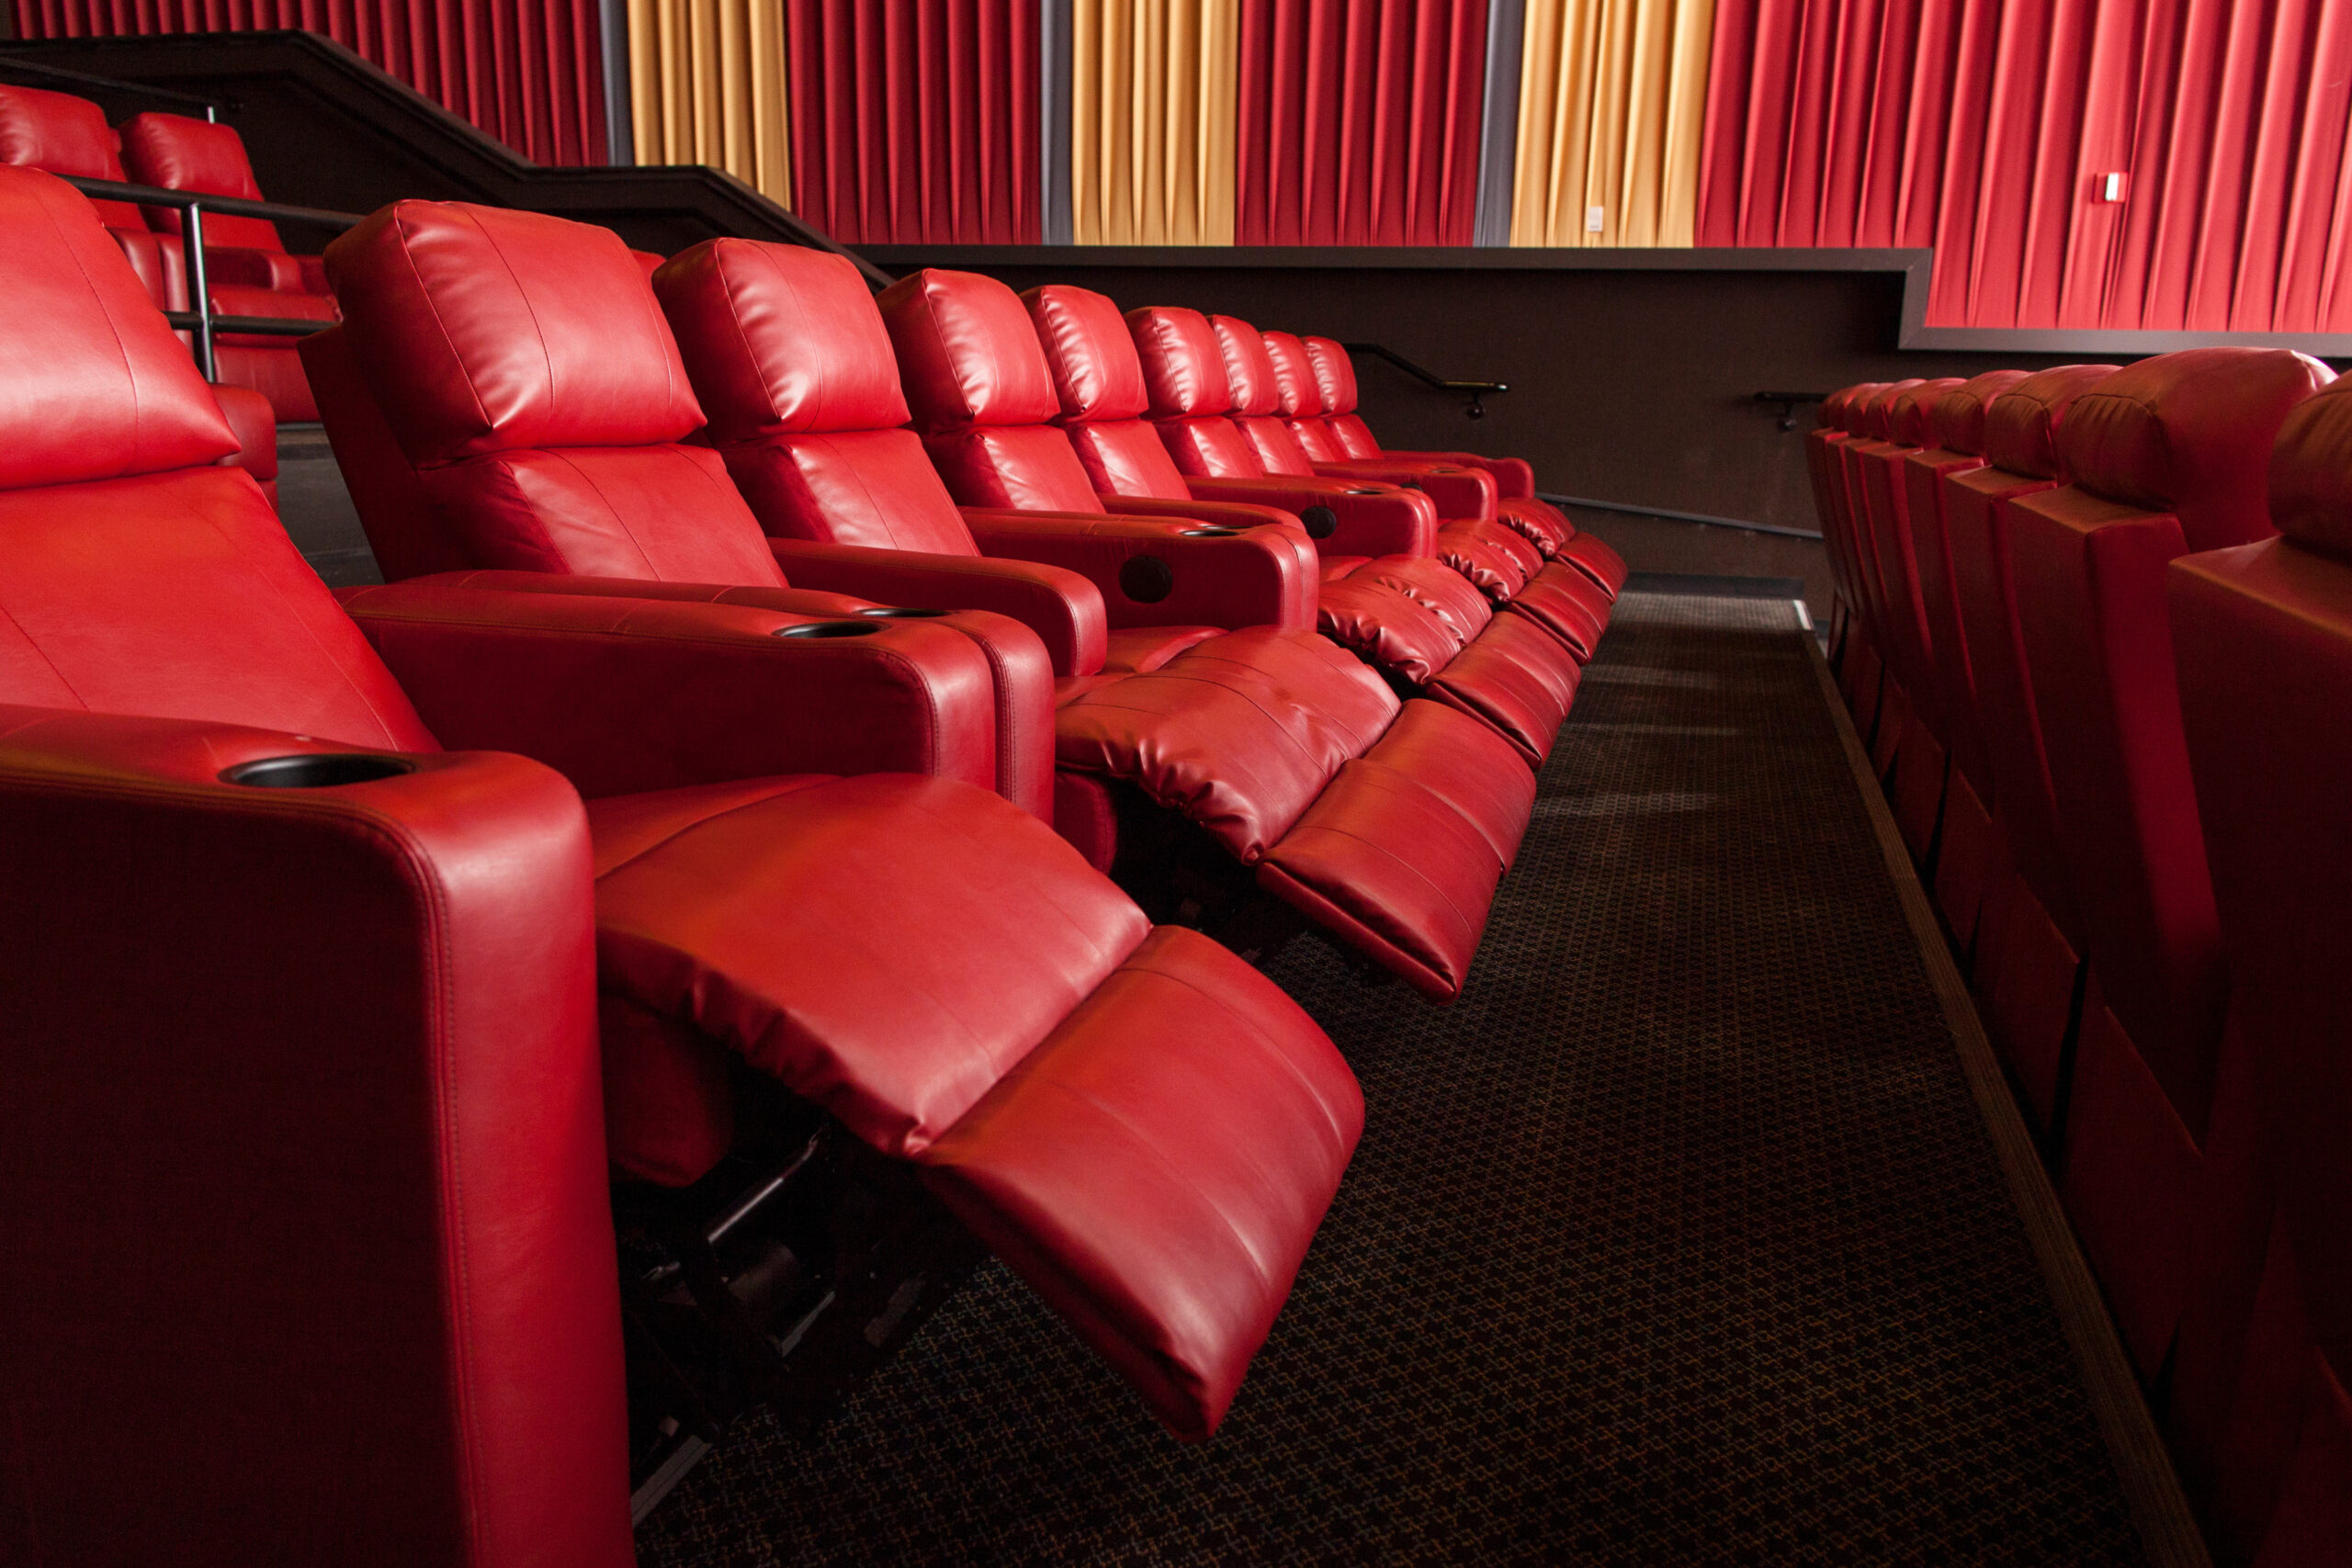 Marcus Theatres' seating